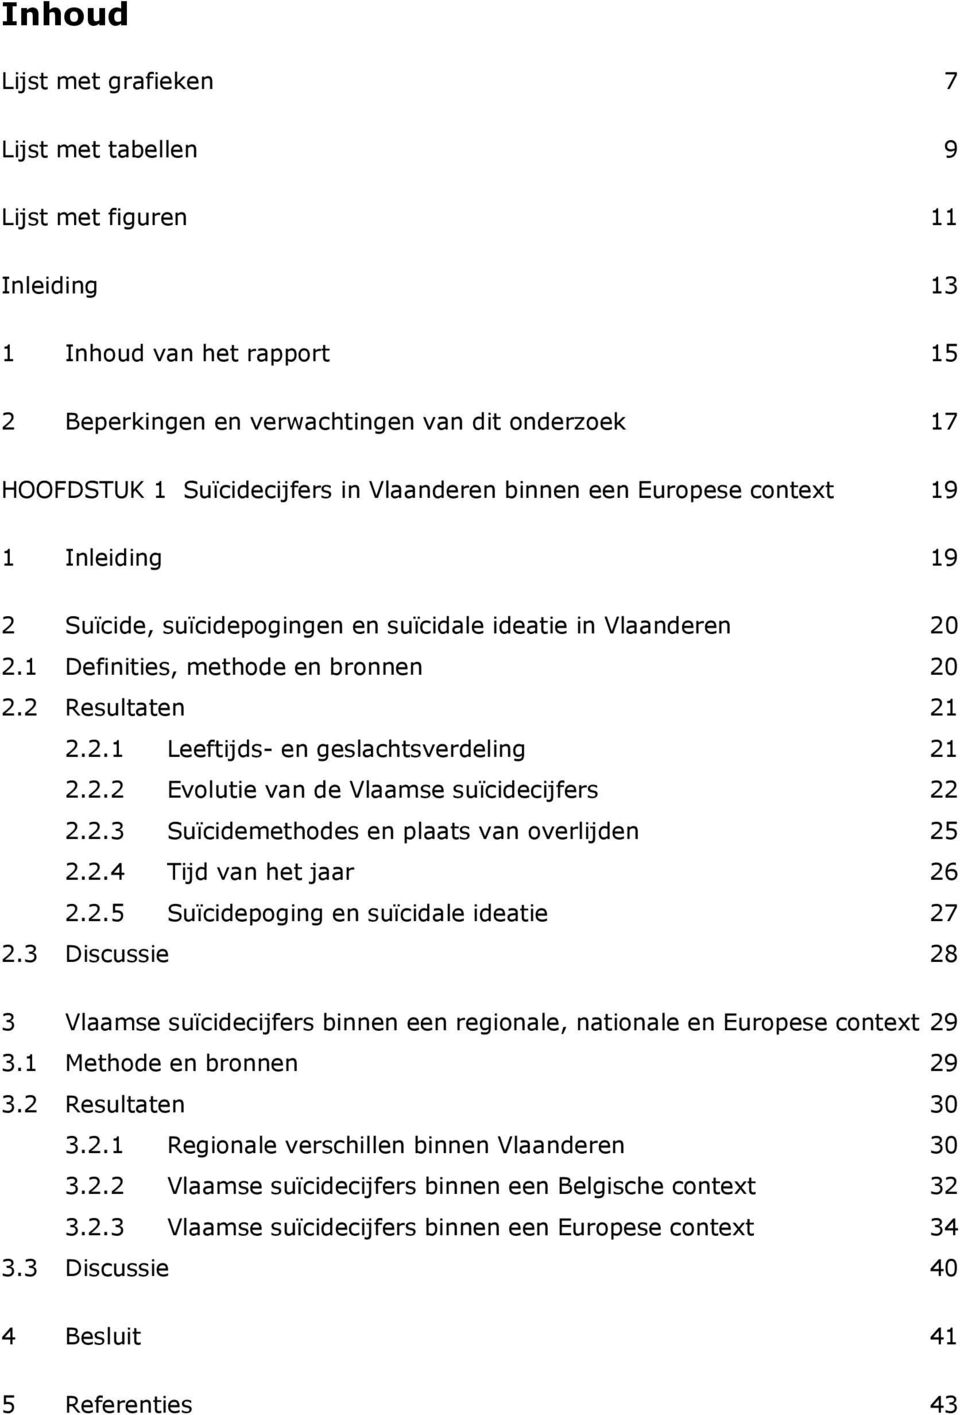 2.2 Evolutie van de Vlaamse suïcidecijfers 22 2.2.3 Suïcidemethodes en plaats van overlijden 25 2.2.4 Tijd van het jaar 26 2.2.5 Suïcidepoging en suïcidale ideatie 27 2.